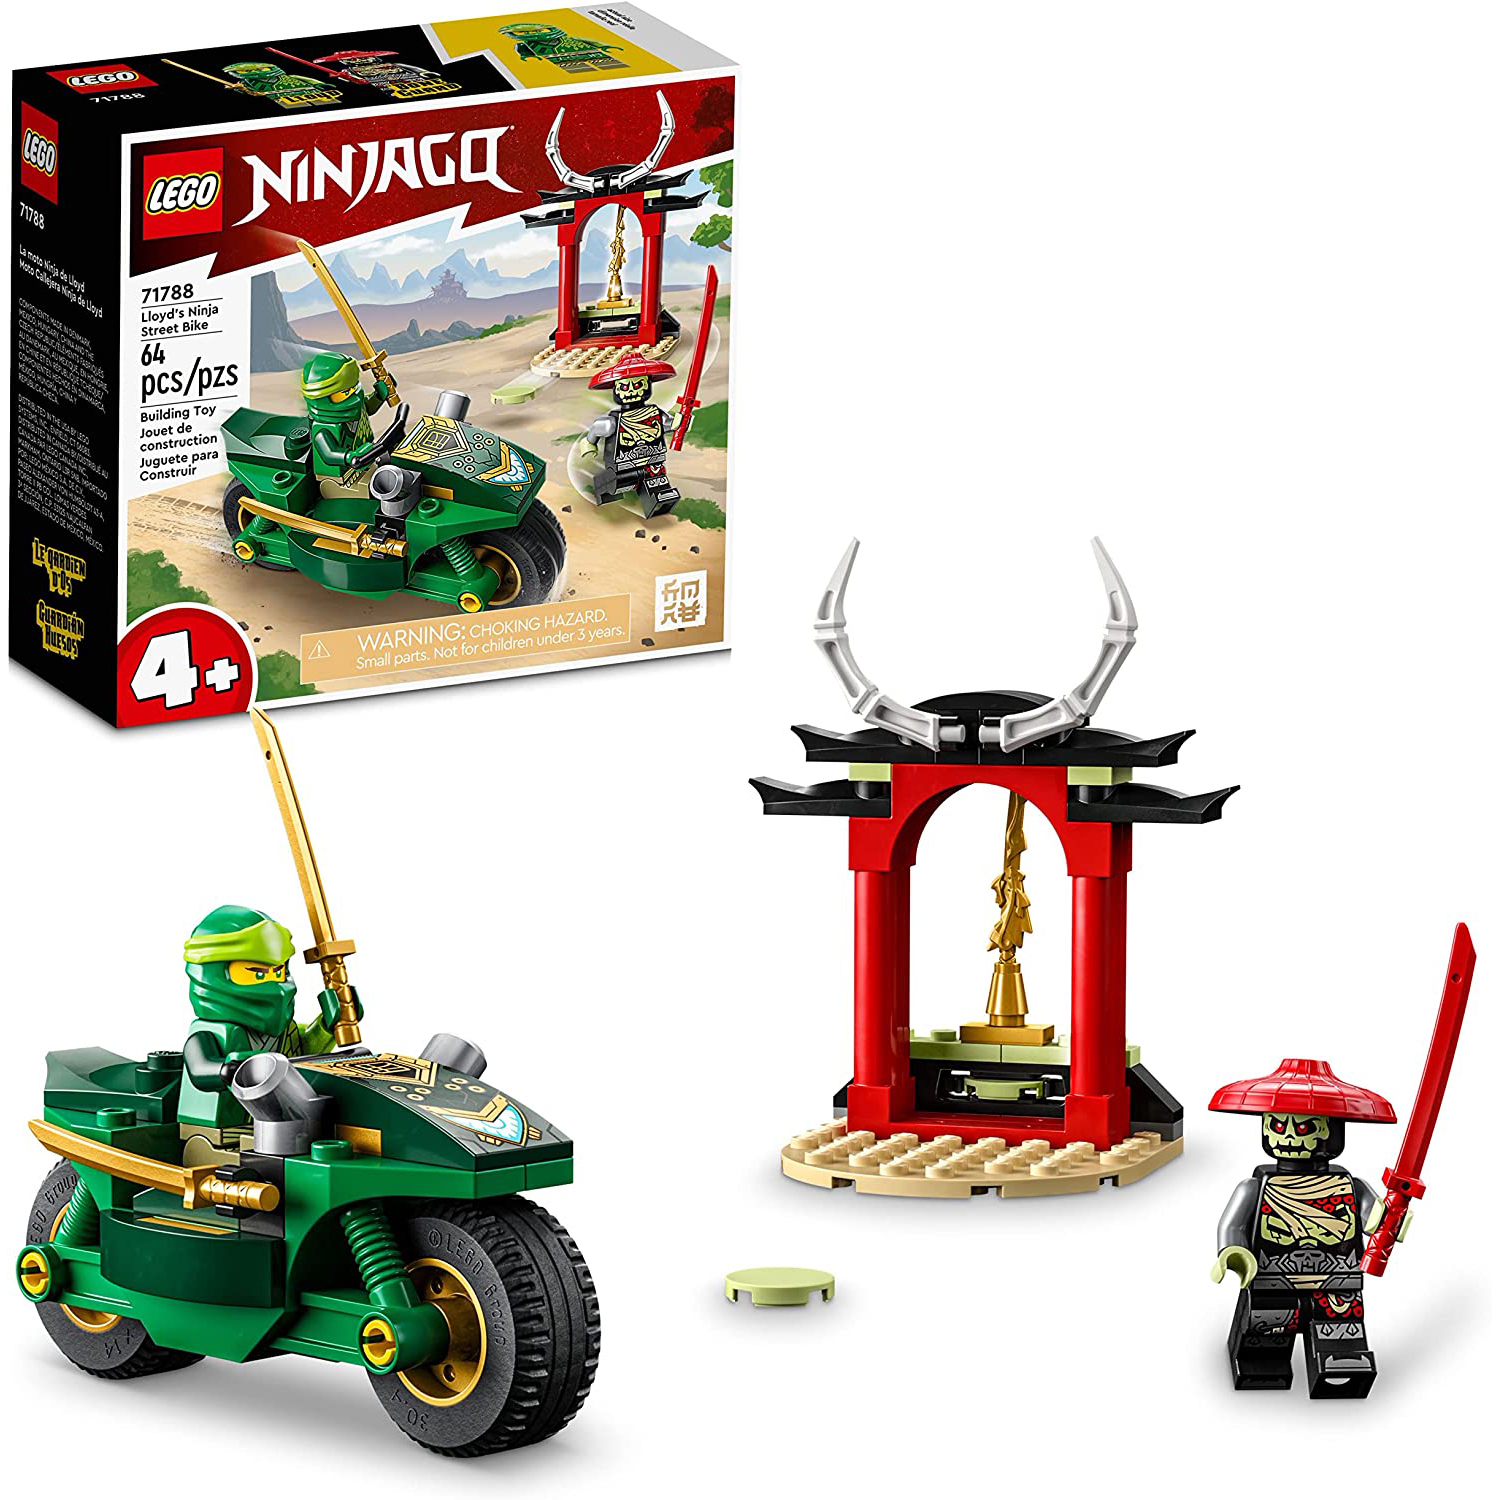 Конструктор LEGO NINJAGO Уличный байк Ллойда, 64 детали, 71788 конструктор lego ninjago битва роботов эво ллойда 223 детали